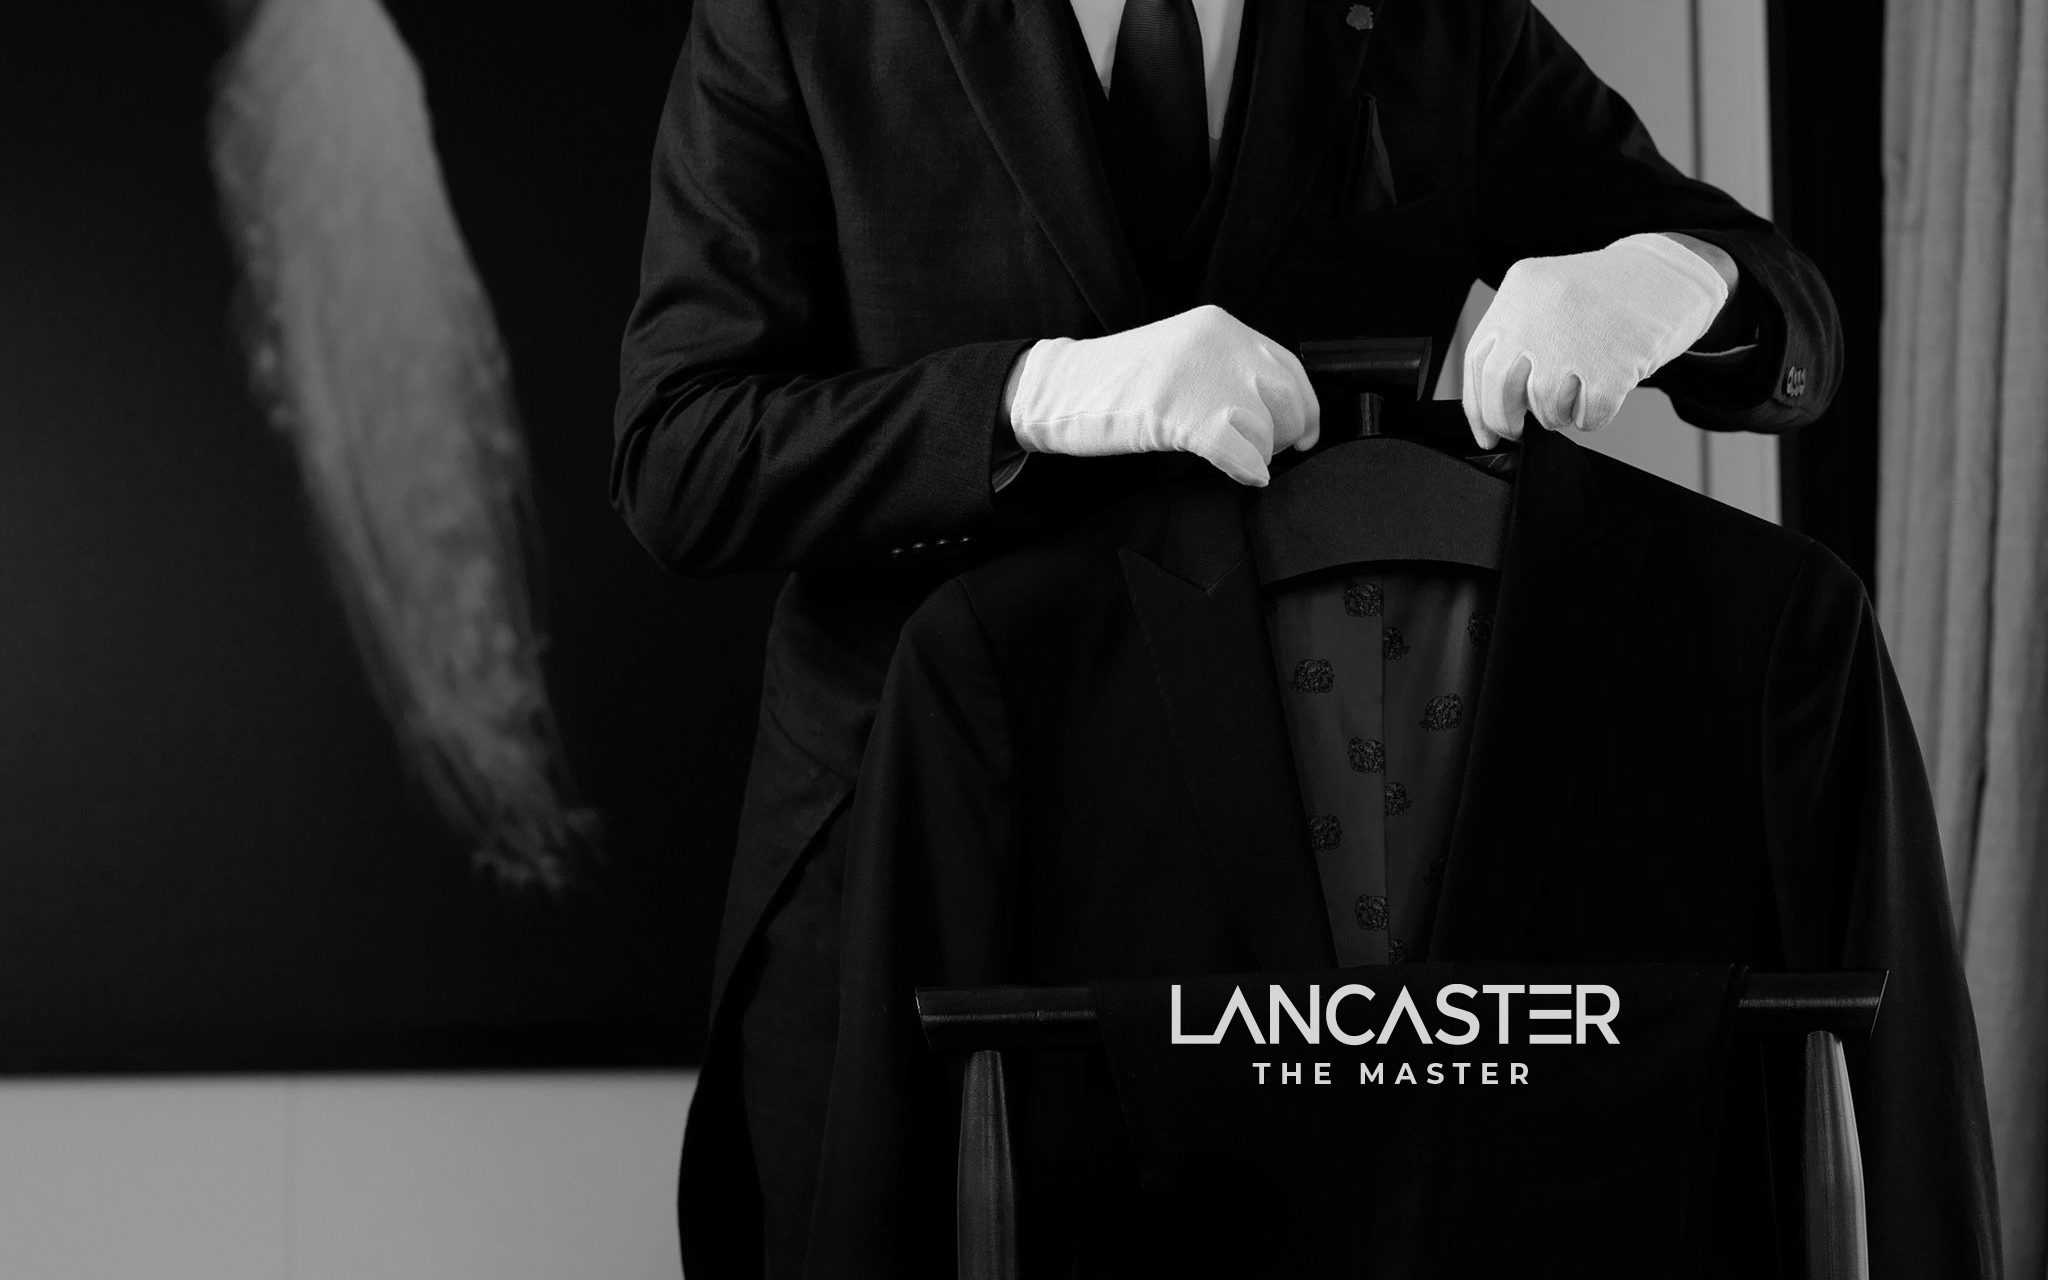 Kinh doanh - Tập đoàn Trung Thủy chào đón Lancaster The Master và ra mắt câu lạc bộ danh giá Lancaster Club